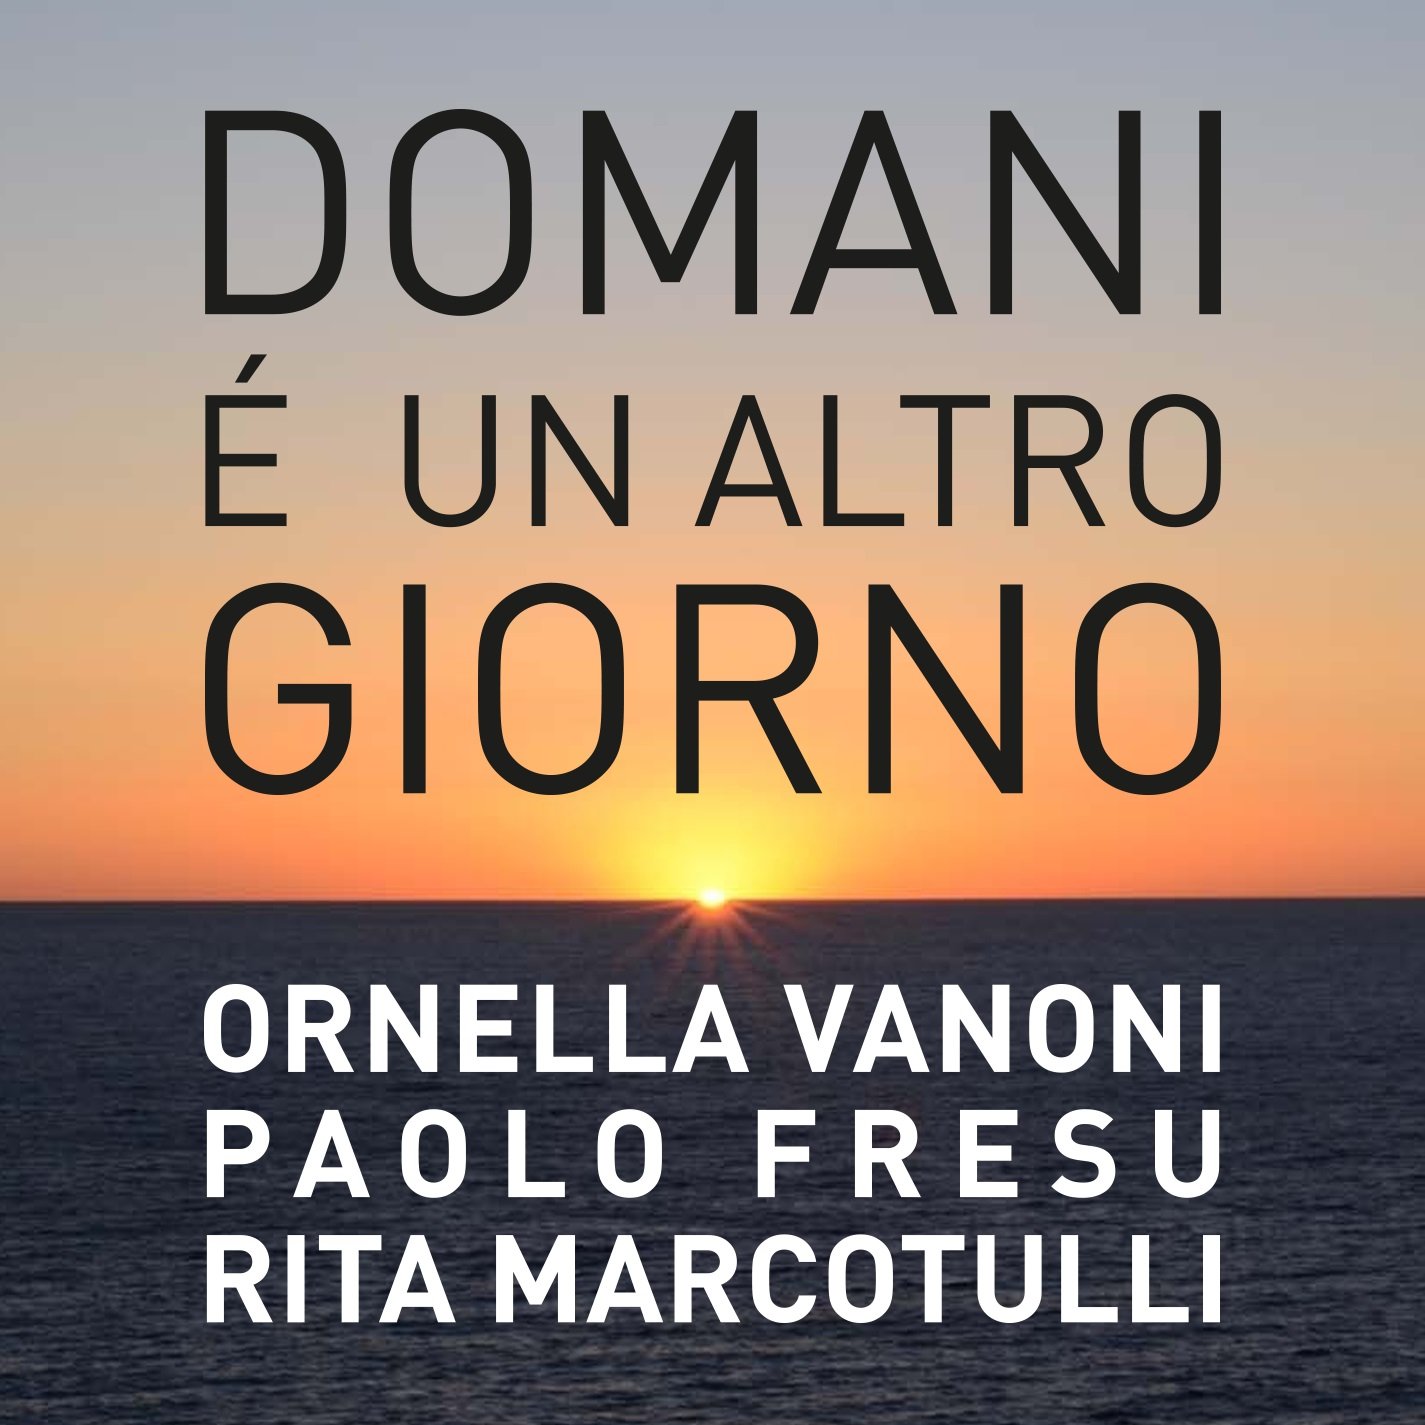 Ornella Vanoni pubblica una nuova versione di “Domani è un altro giorno”